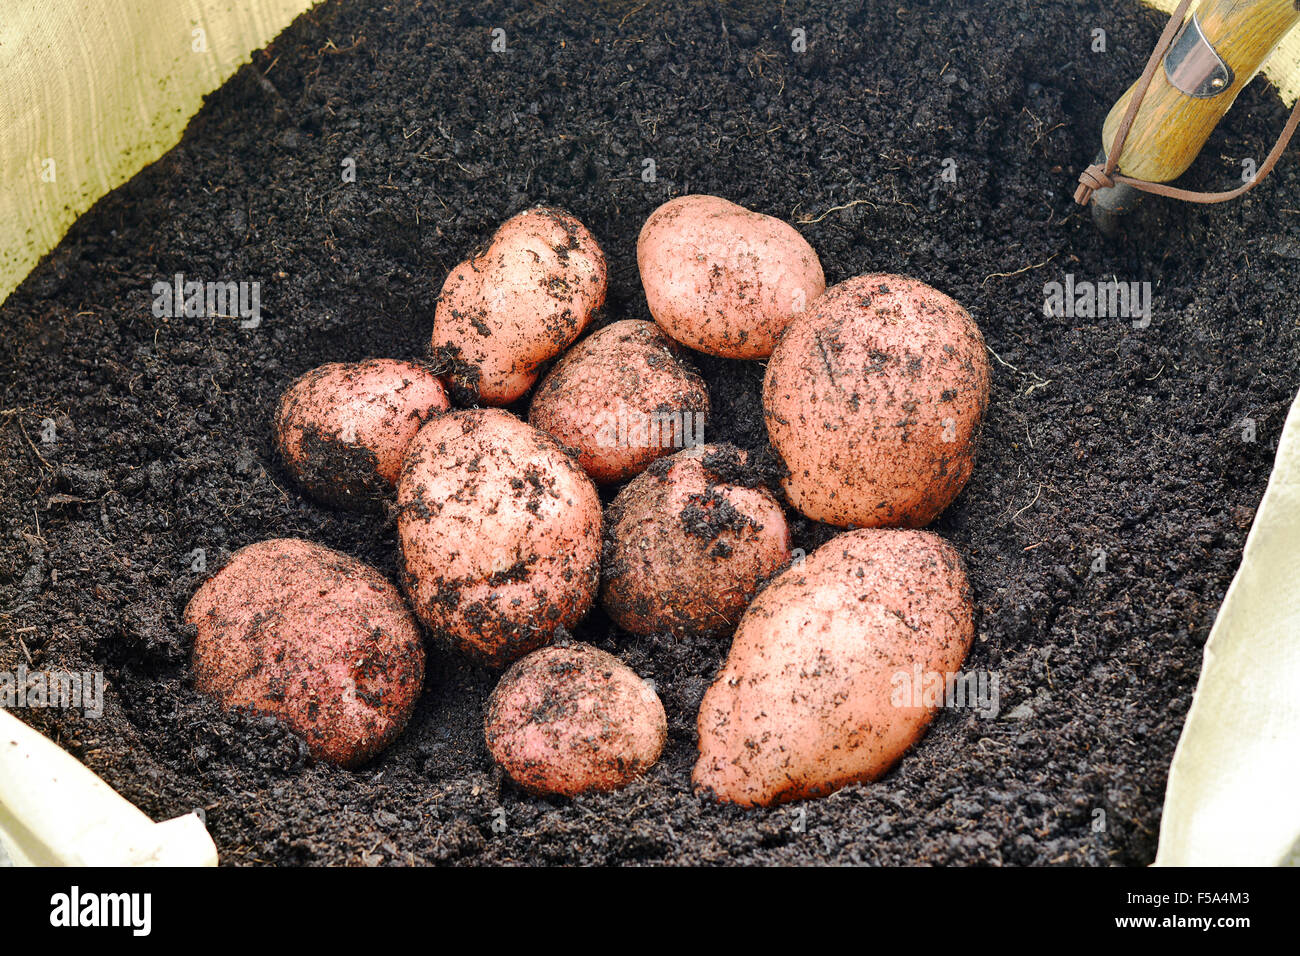 Appena sollevato organici di patate coltivate in un giardino da un sacchetto di crescere in scuro ricco suolo, unwashed scelto focus, esigua profondità di fi Foto Stock